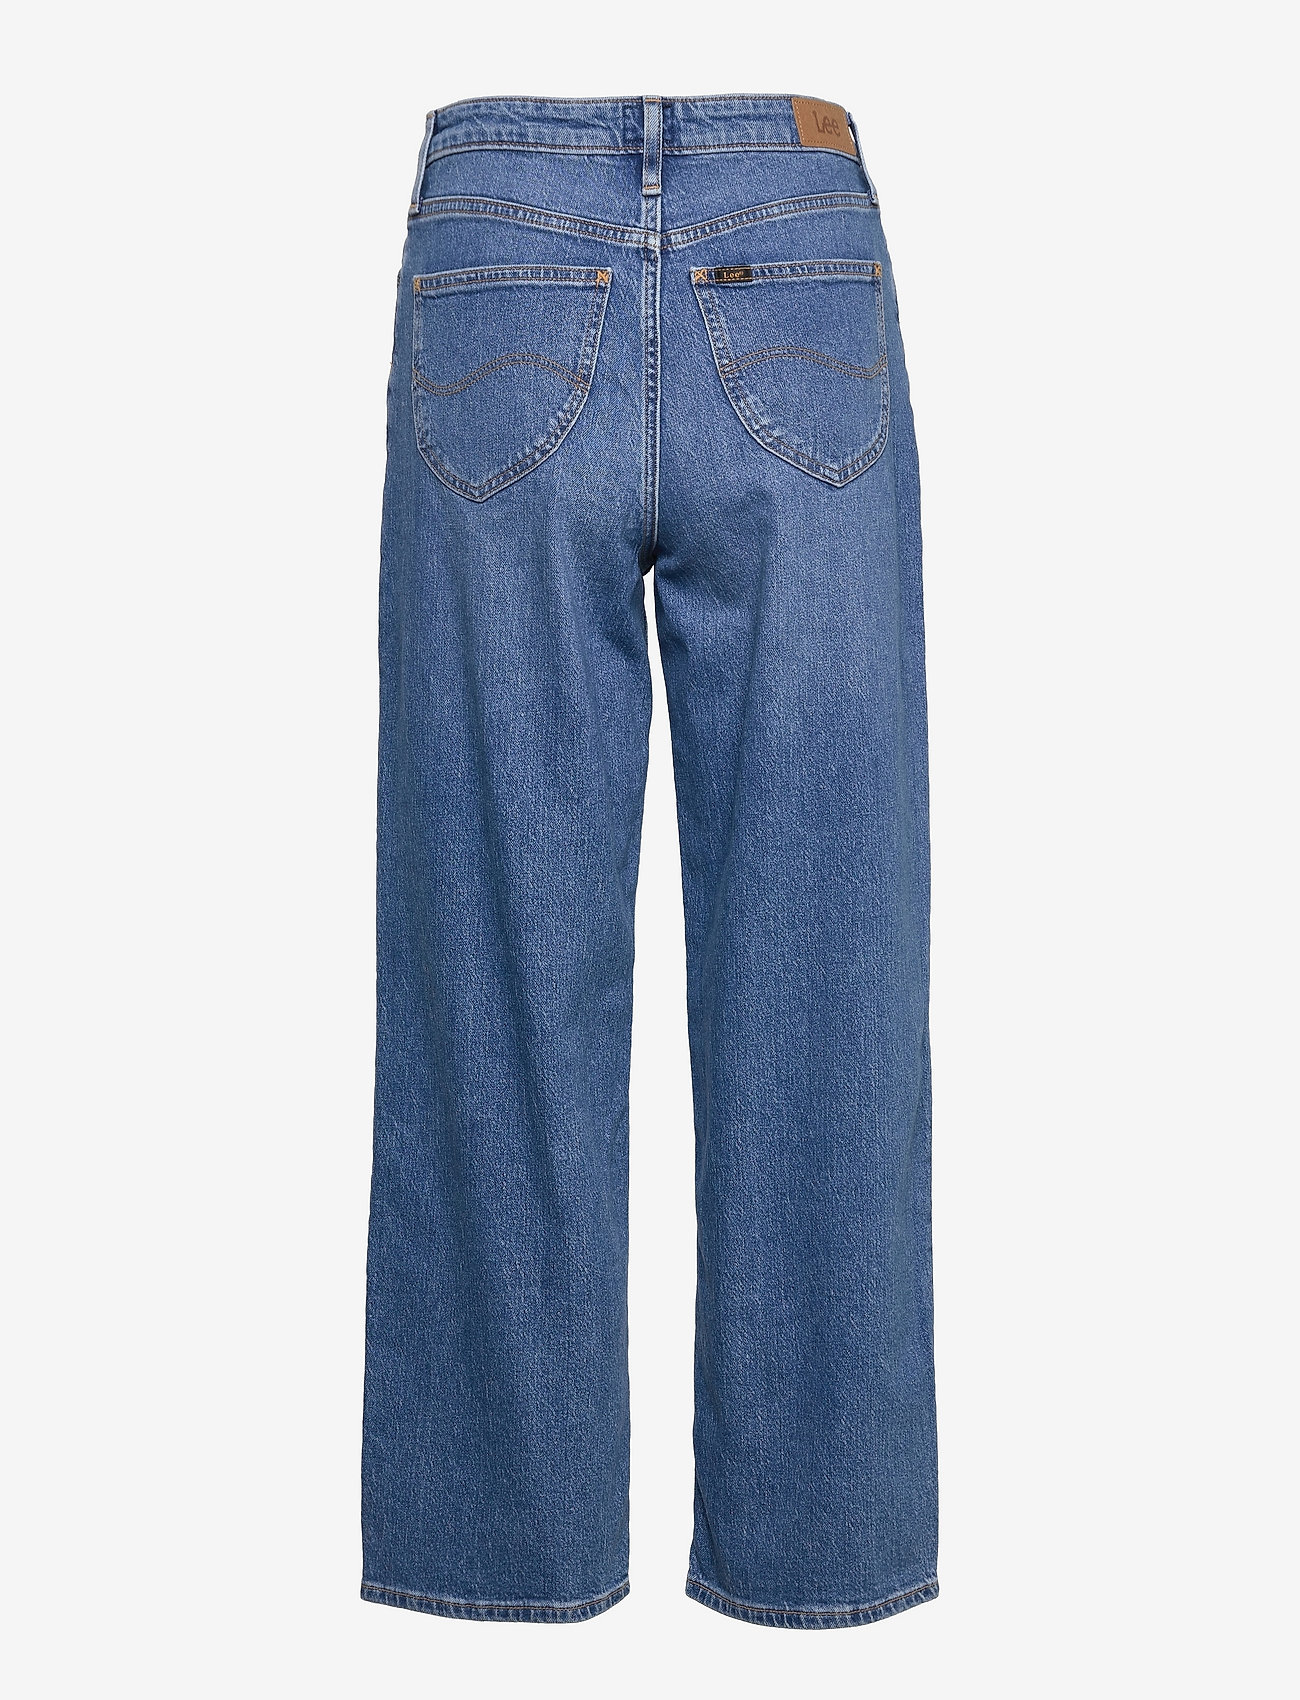 Lee Jeans - WIDE LEG LONG - wide leg jeans - used alton - 1